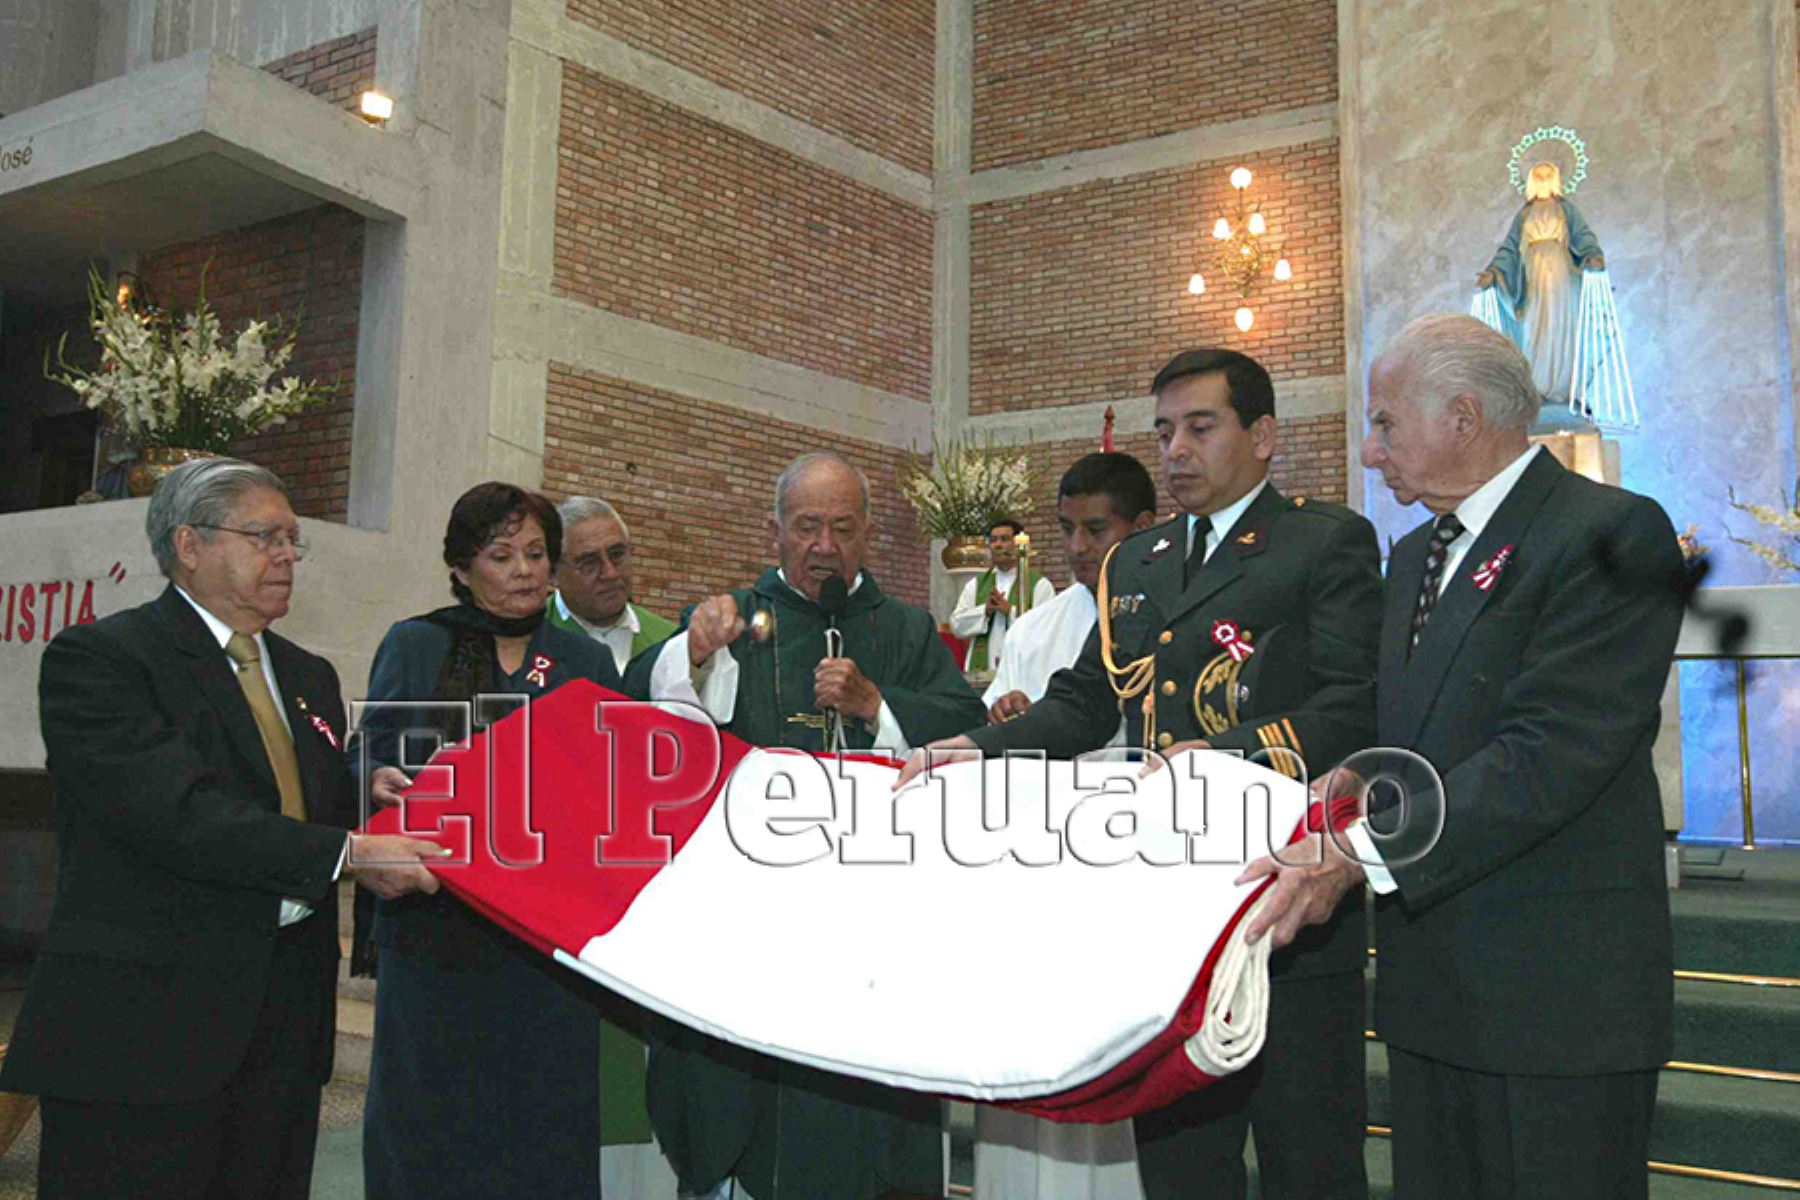 Lima – 28 agosto 2005 / En ceremonia religiosa, sacerdote bendice la Bandera bicolor, en el marco de la celebración del 76° aniversario de la reincorporación de Tacna al Perú. 
Foto: El Peruano / Víctor Palomino